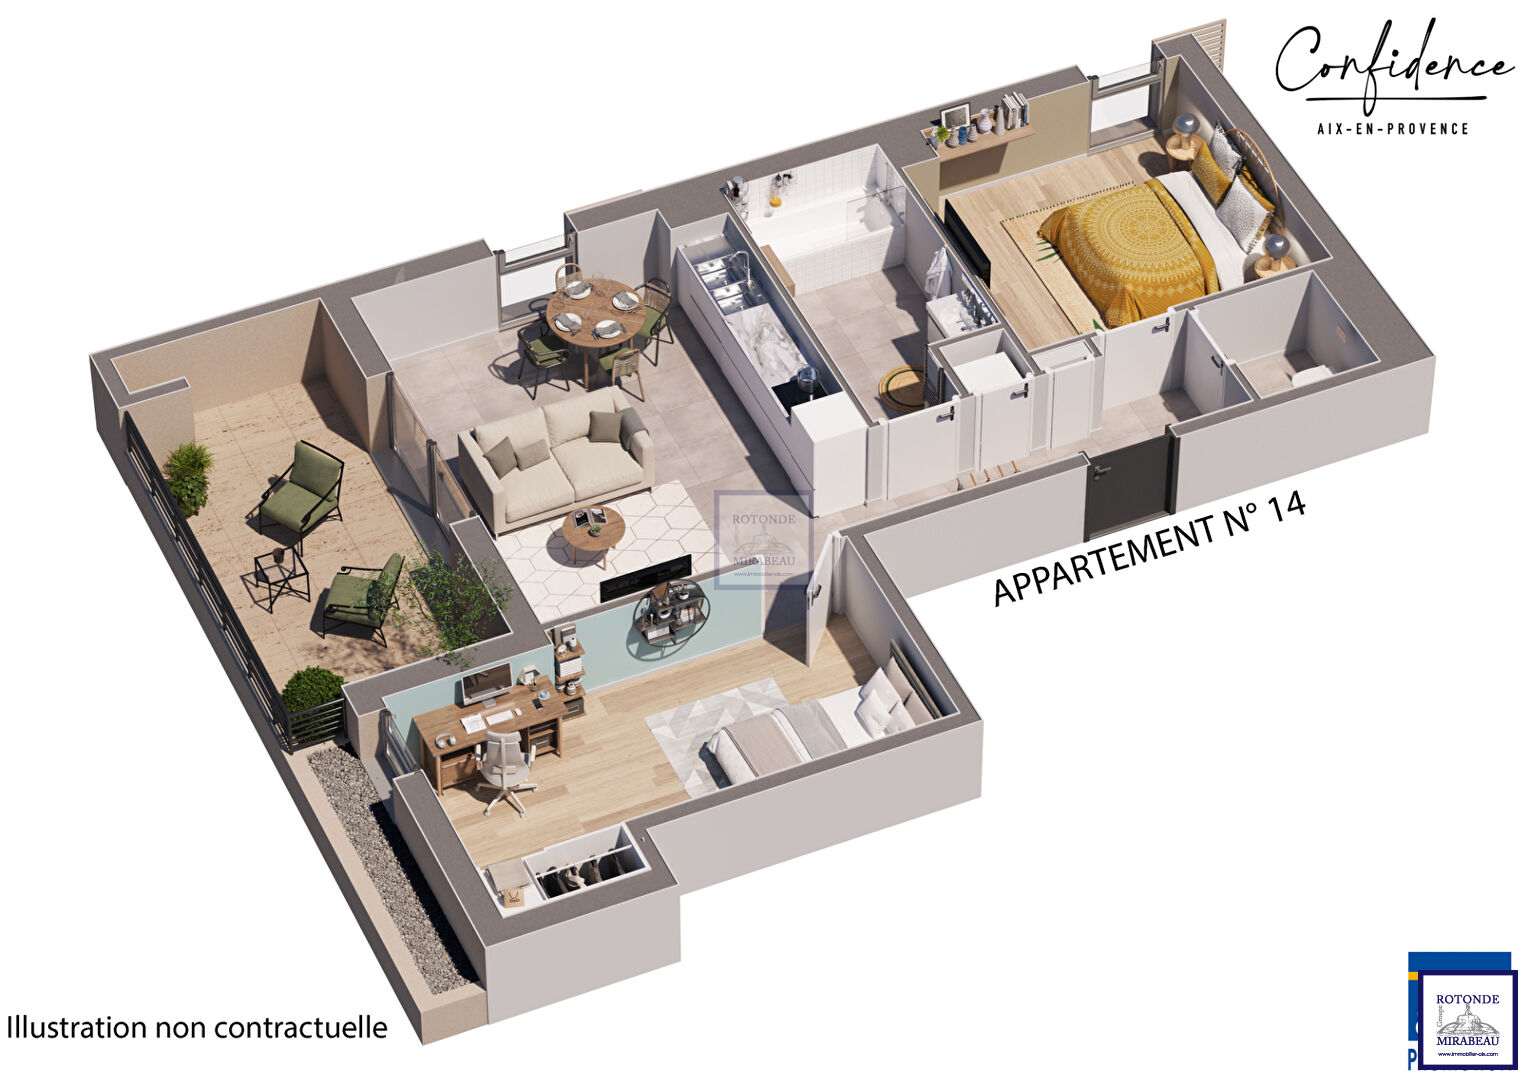 Vente Appartement AIX EN PROVENCE surface habitable de 60.25 m²